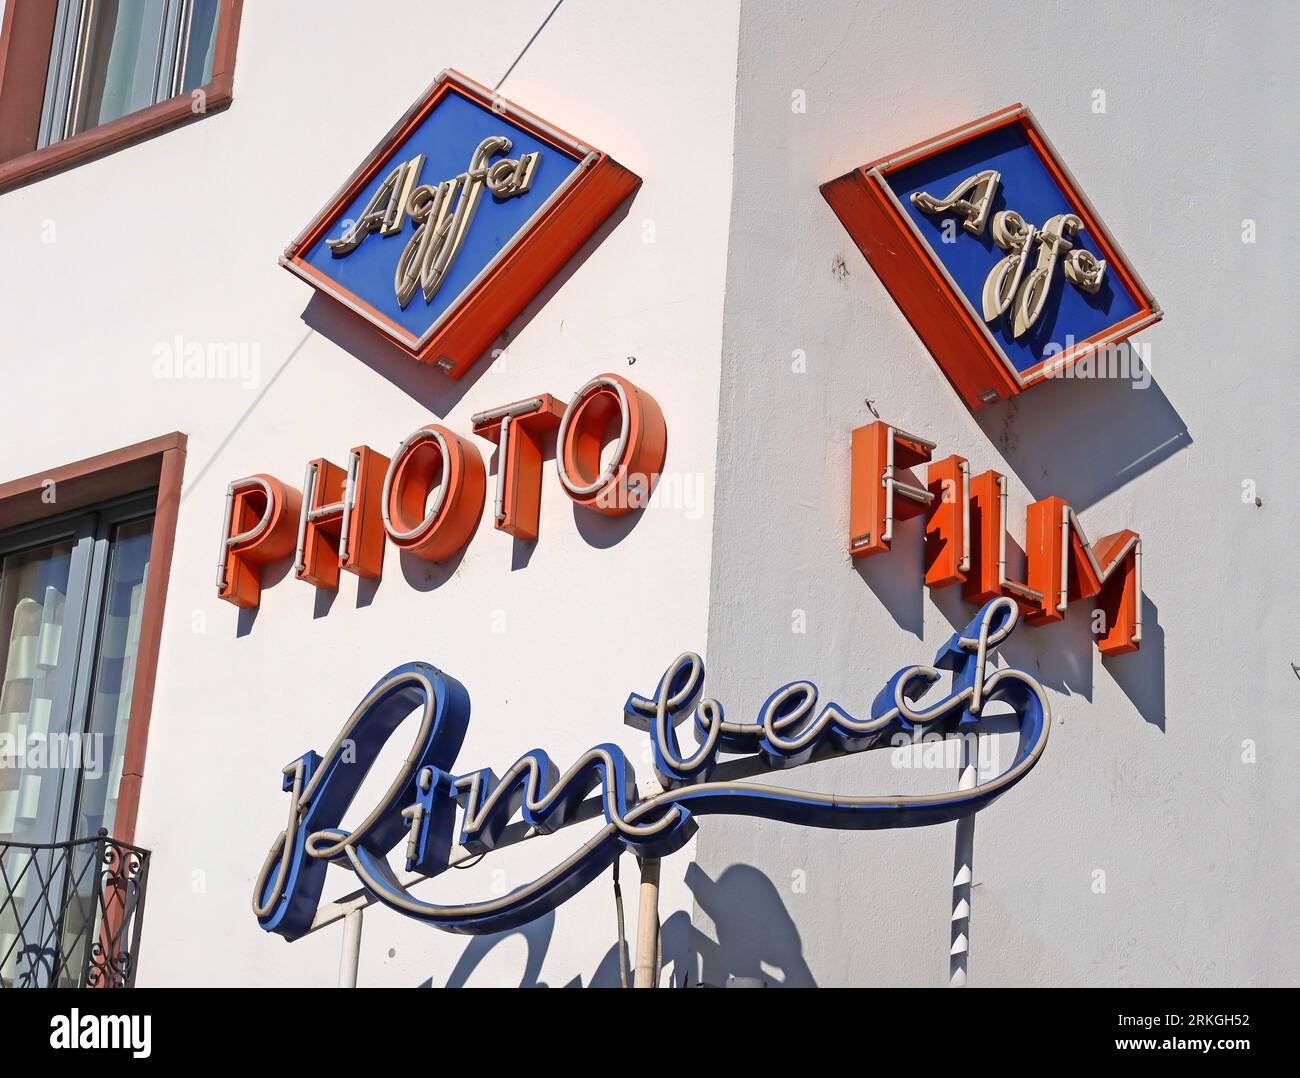 Panneaux d'affichage d'art déco allemands anciens Agfa film, chez Foto Rimbach photographes, centre-ville de Mainz, Rhénanie-Palatinat, Allemagne Banque D'Images